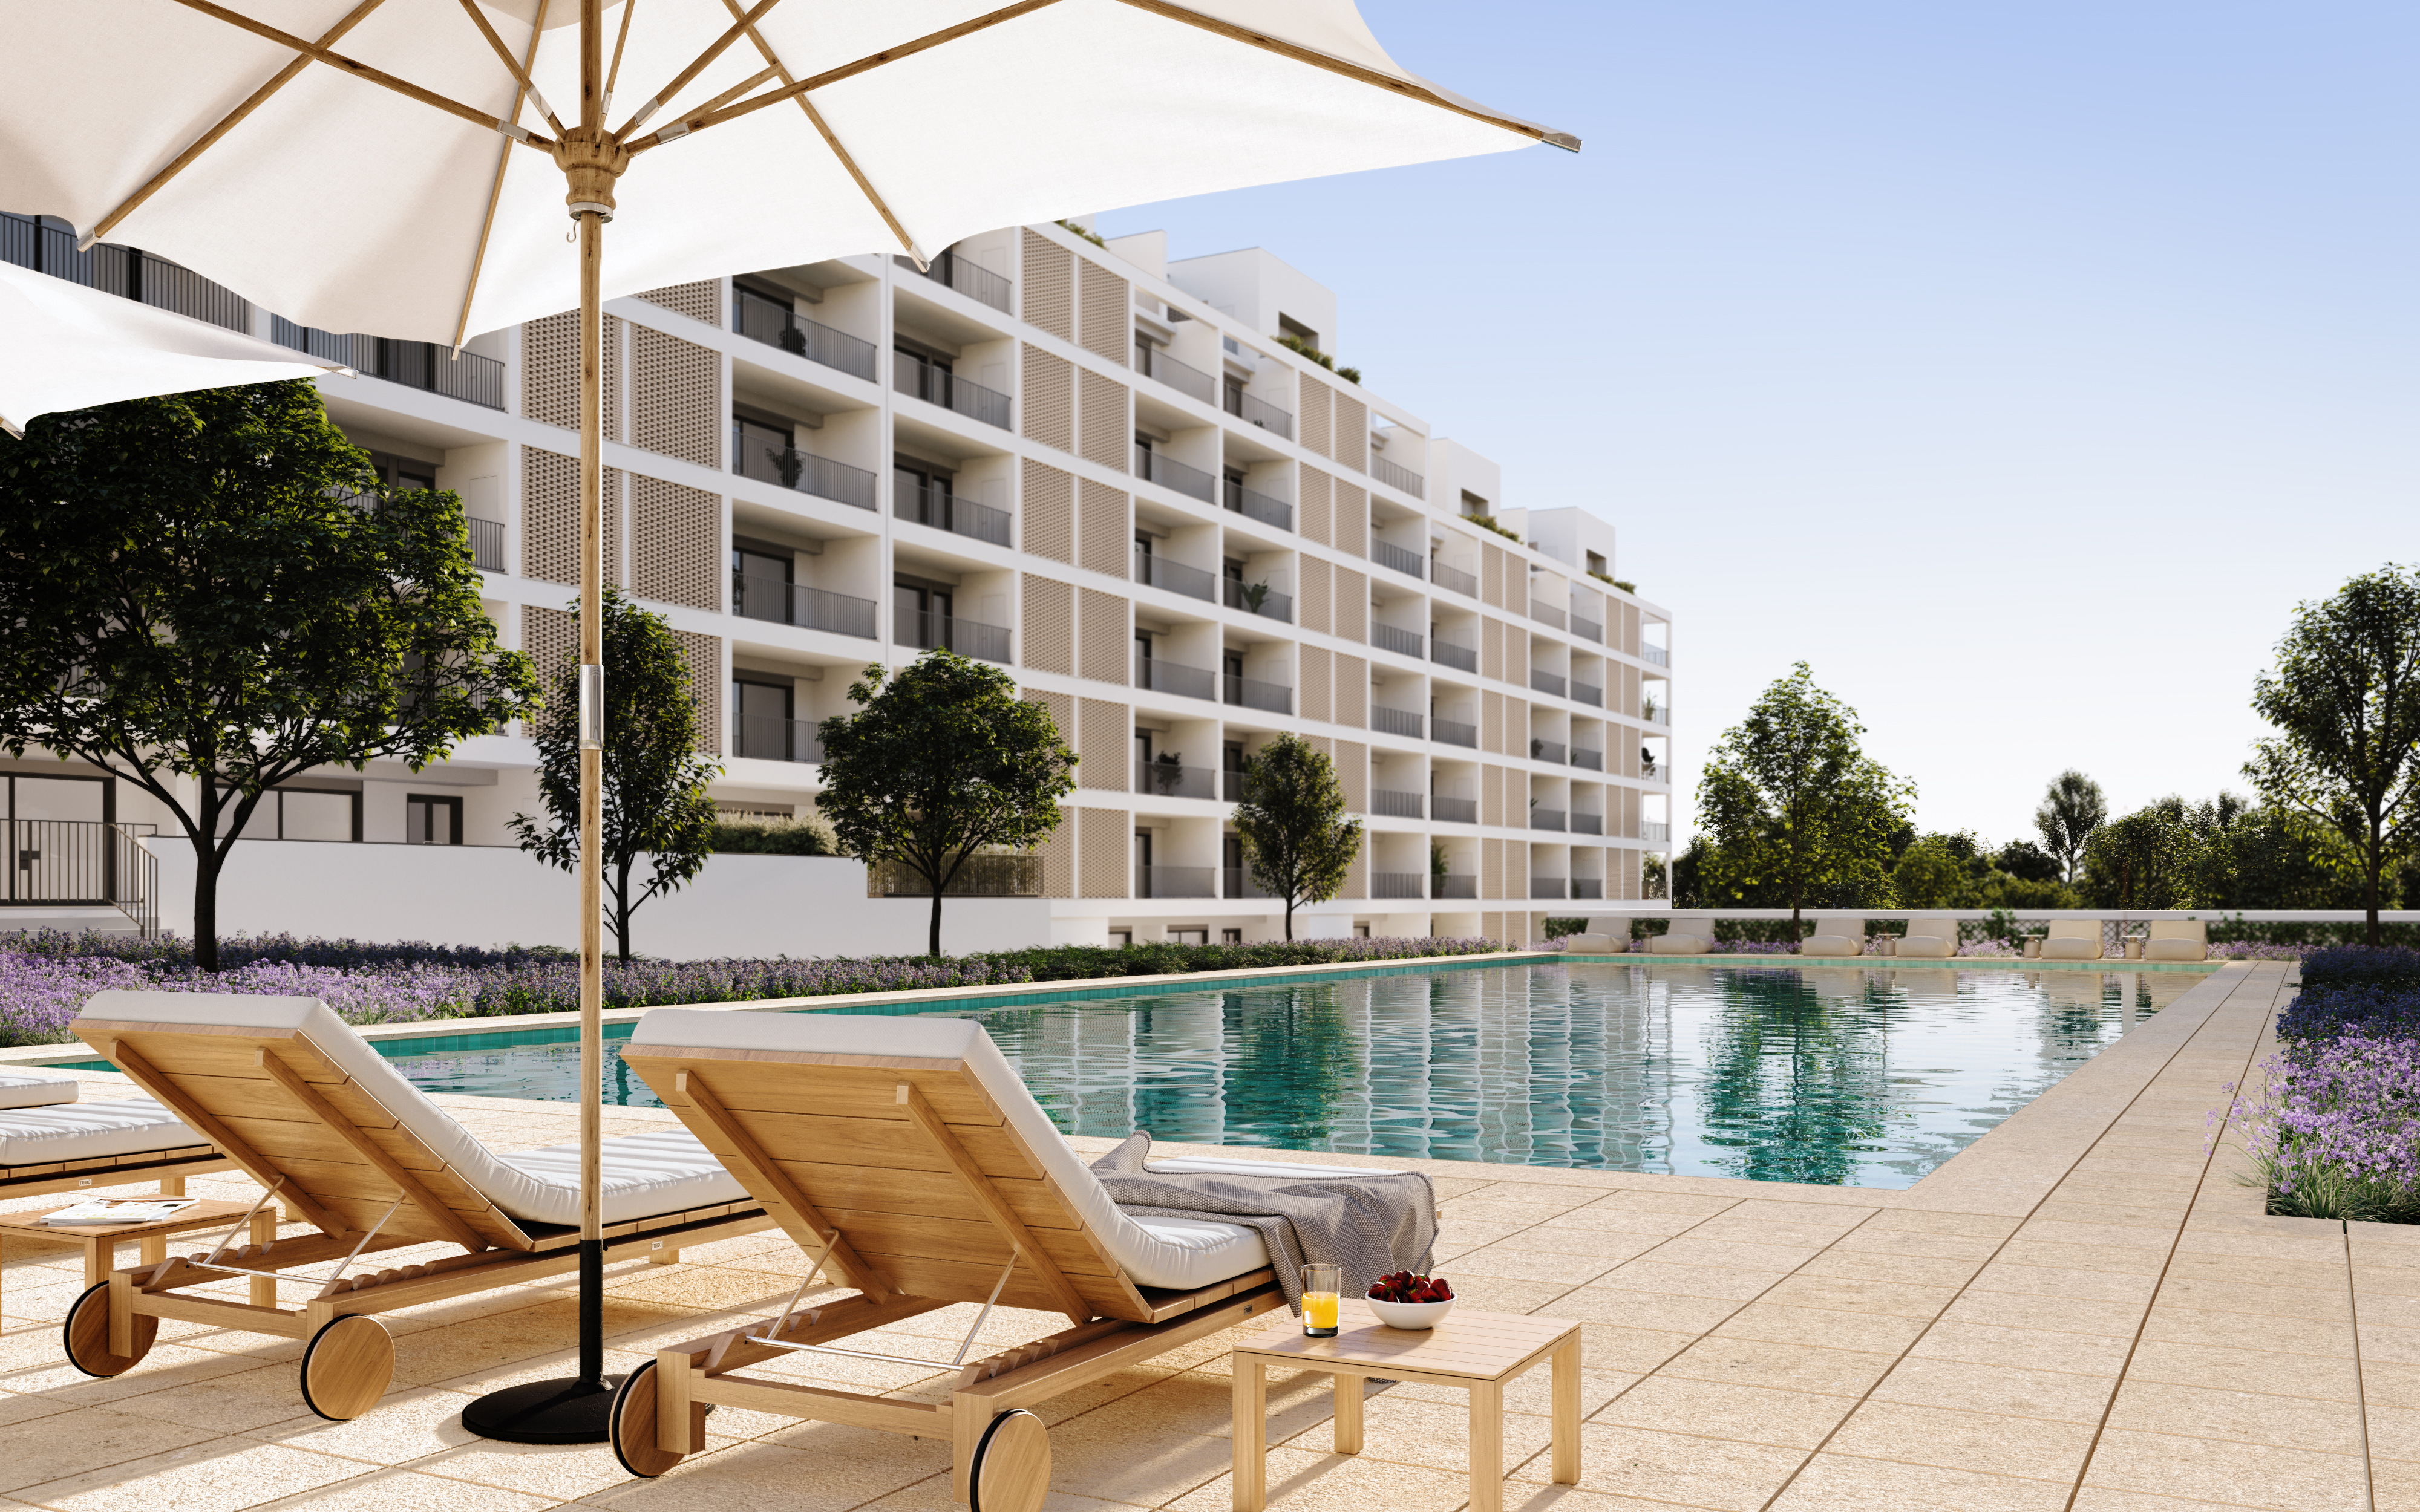 Solyd lança mais 130 novos apartamentos no Élou